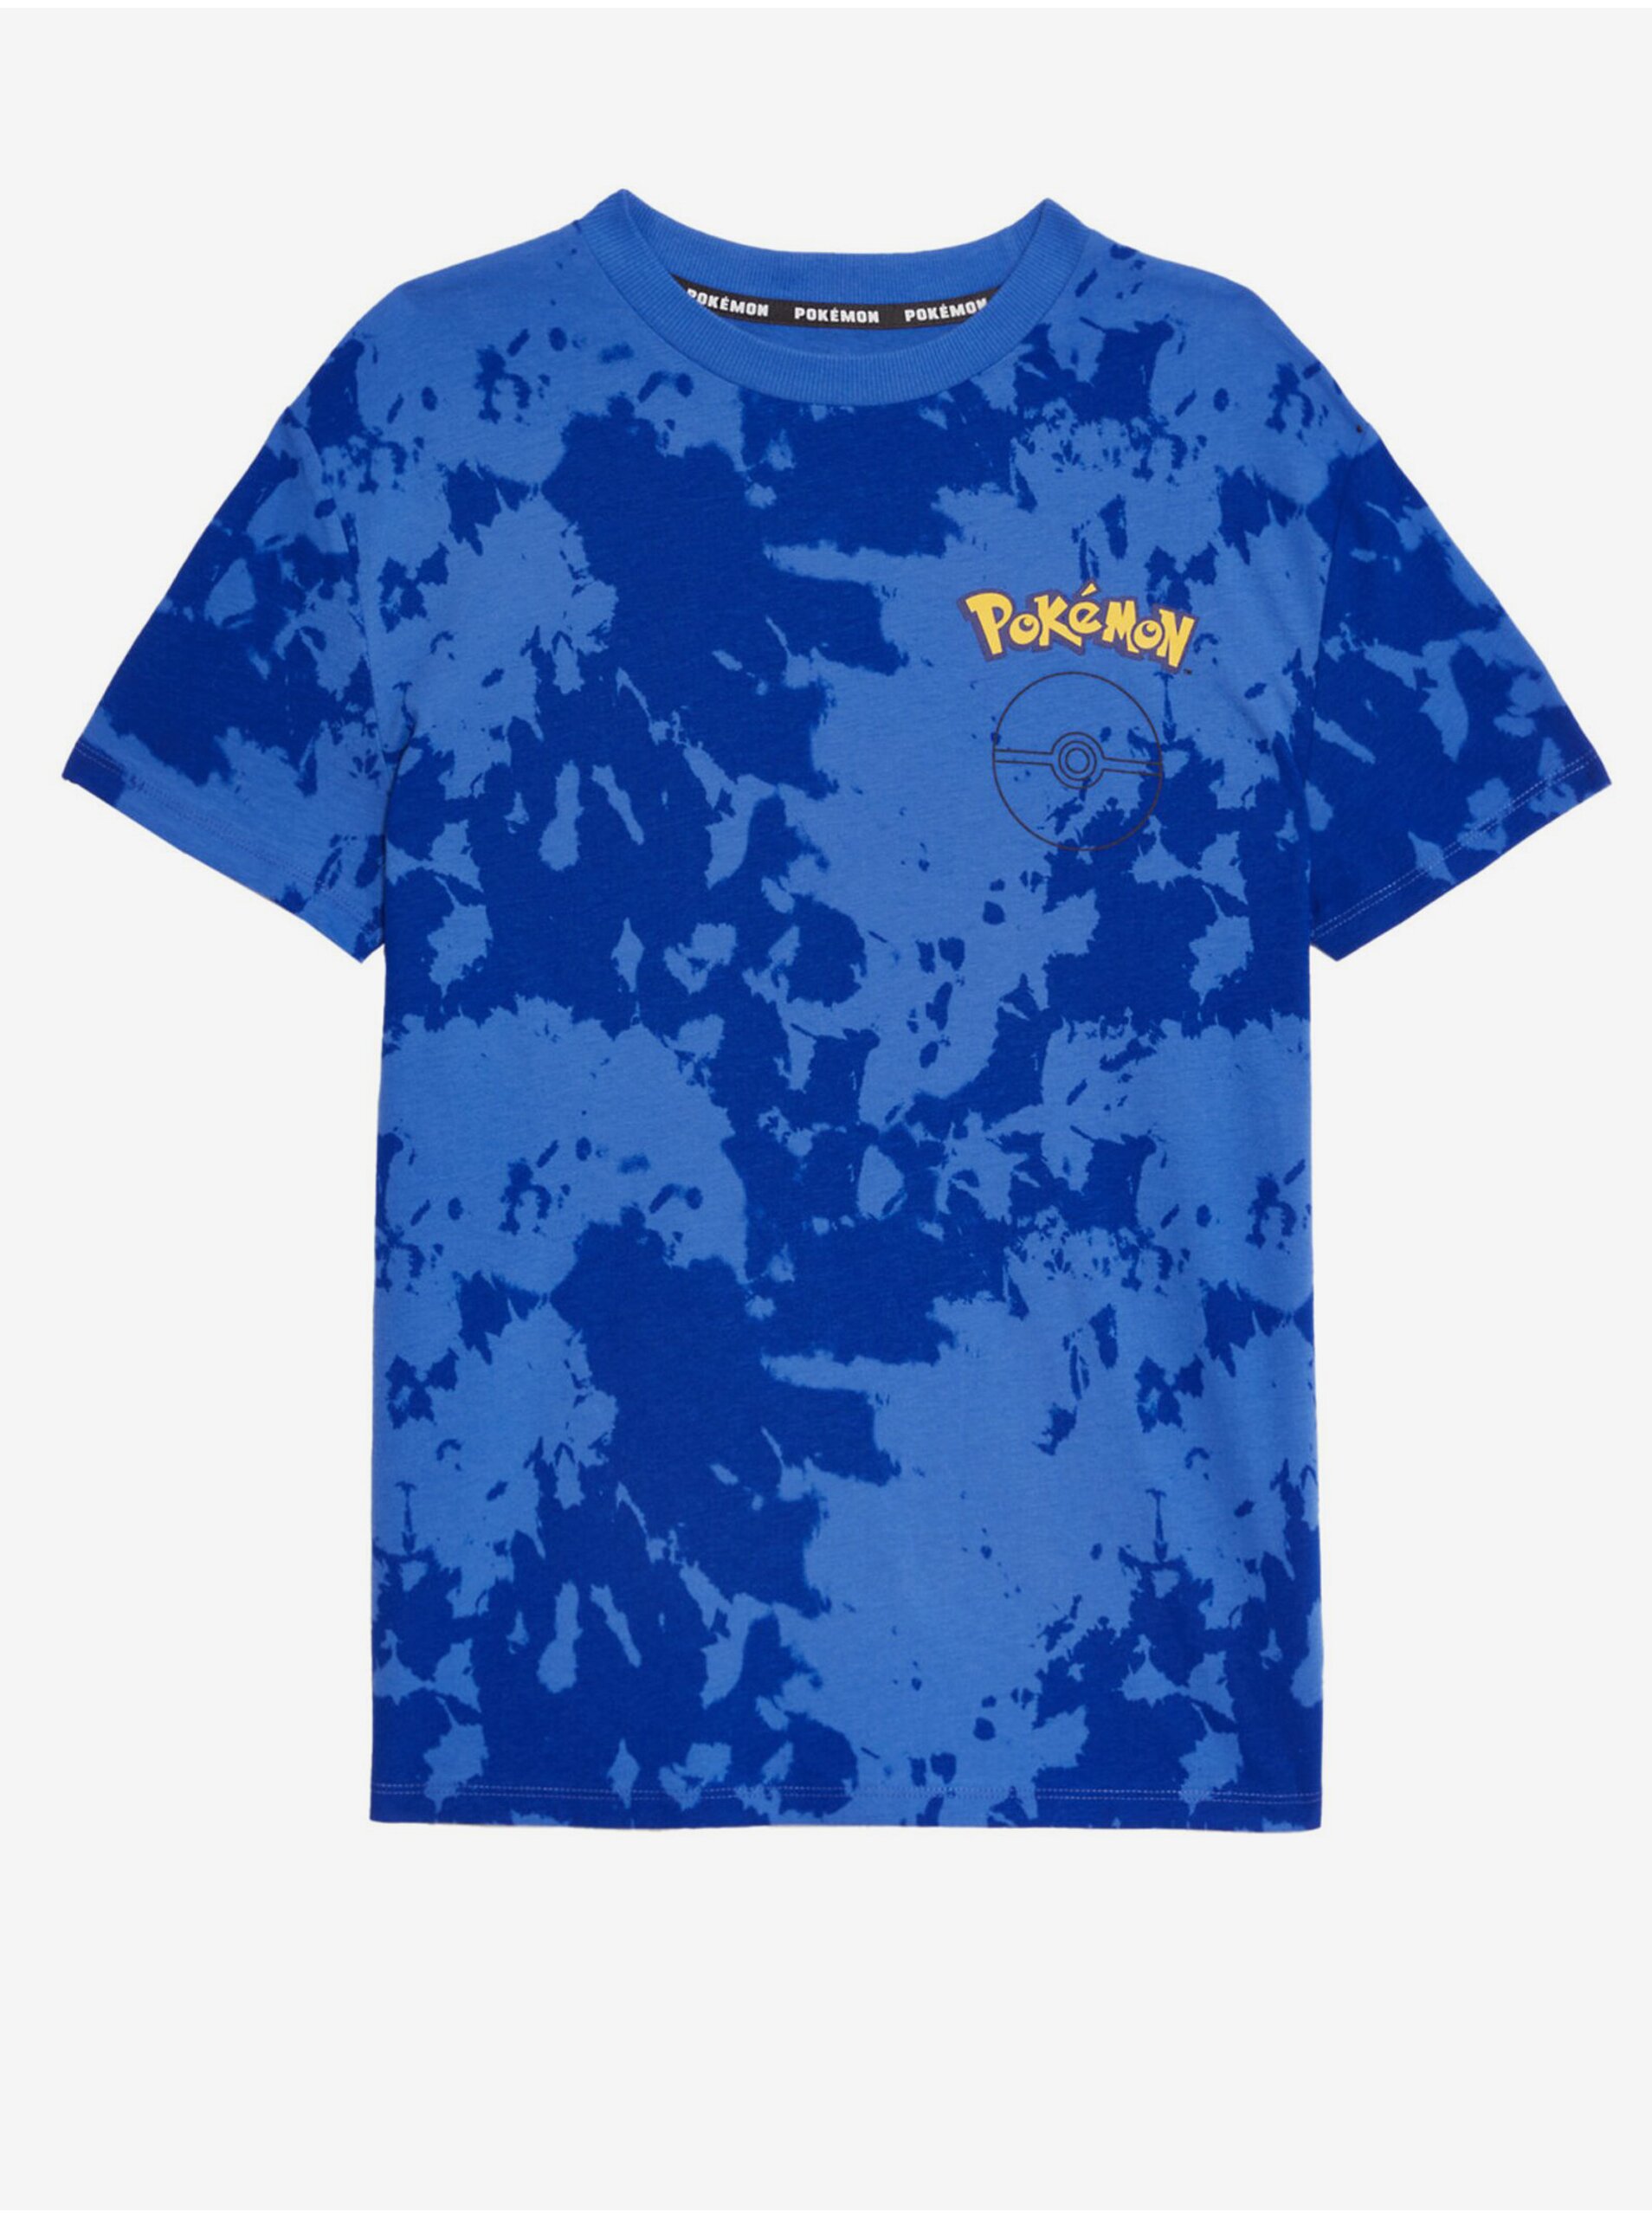 Levně Modré klučičí tričko s motivem Marks & Spencer Pokémon™